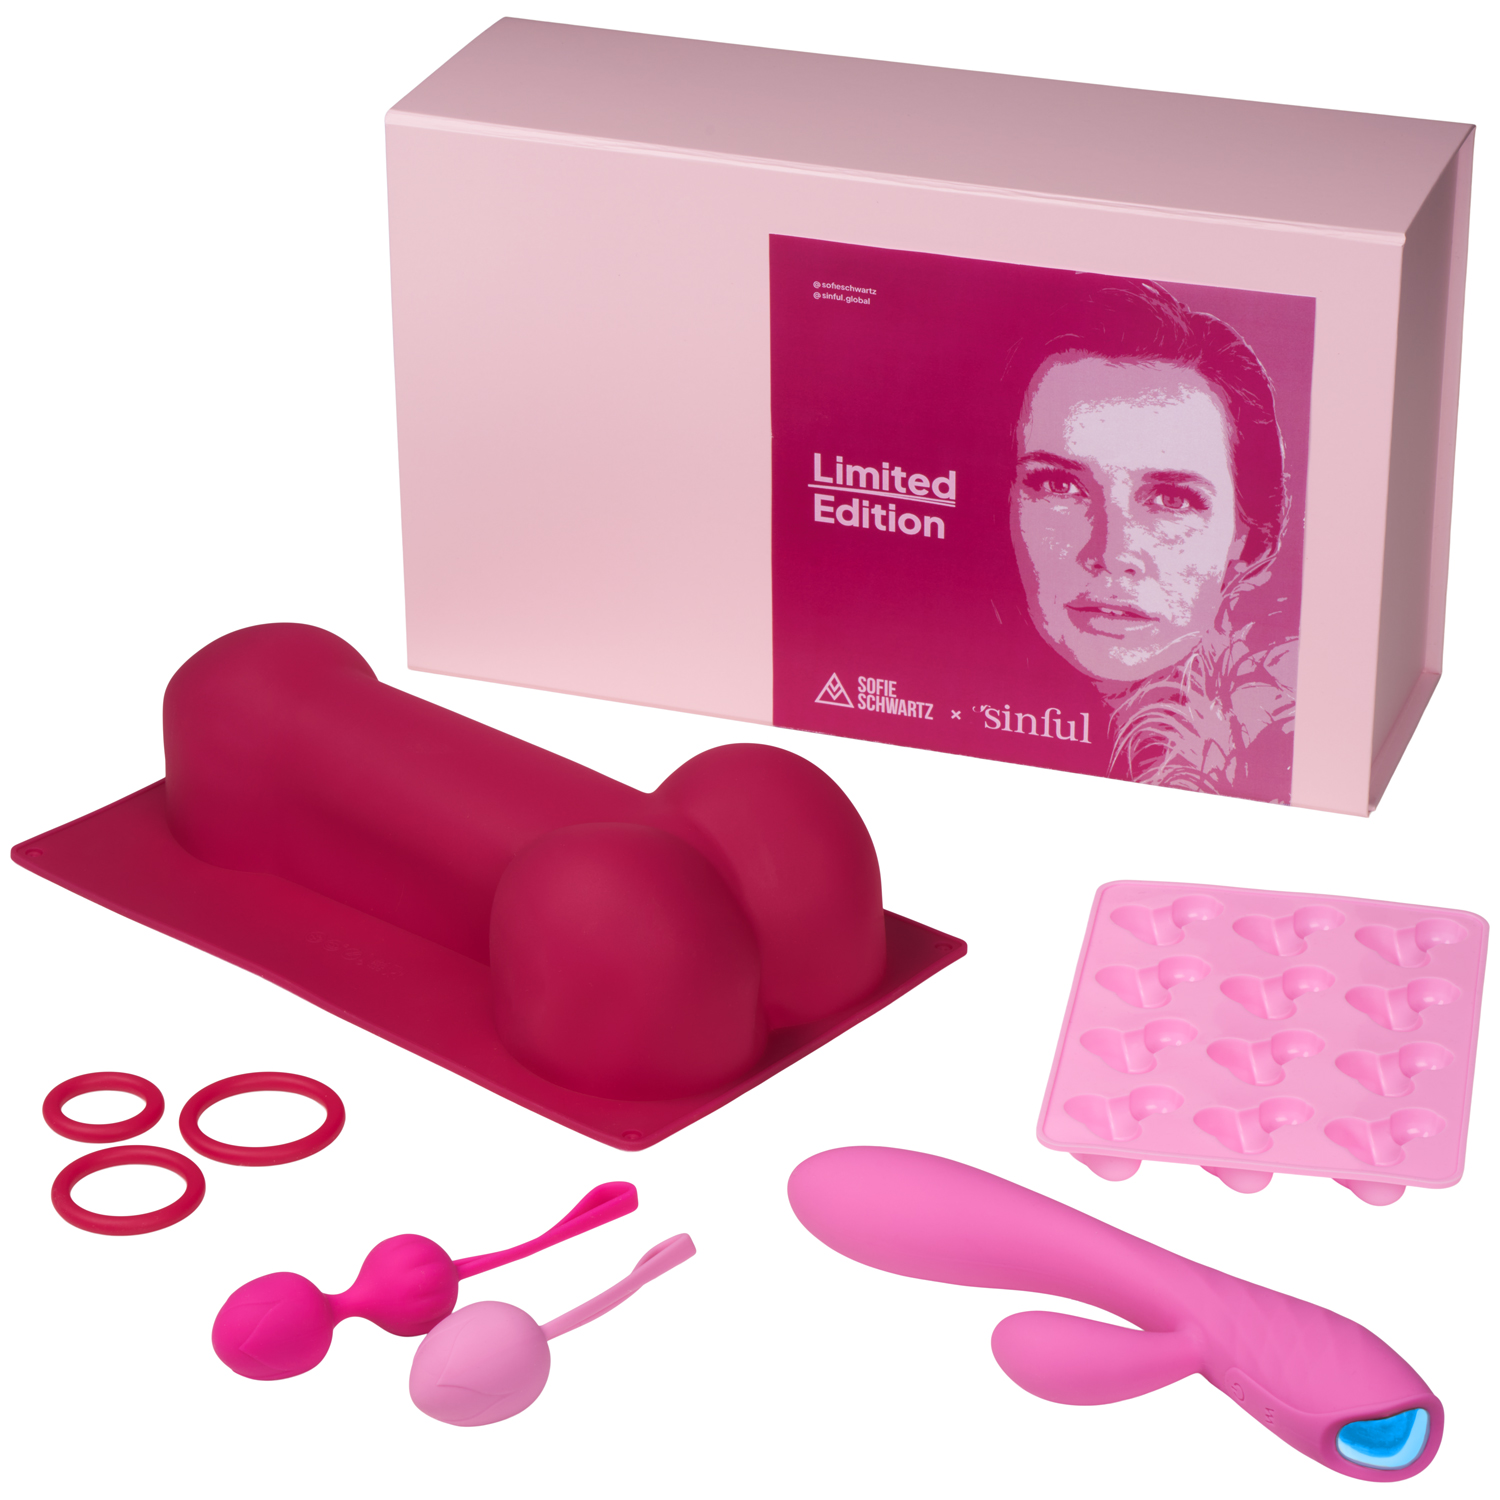 Sinful X Sofie Schwartz Limited Edition Box - Pink